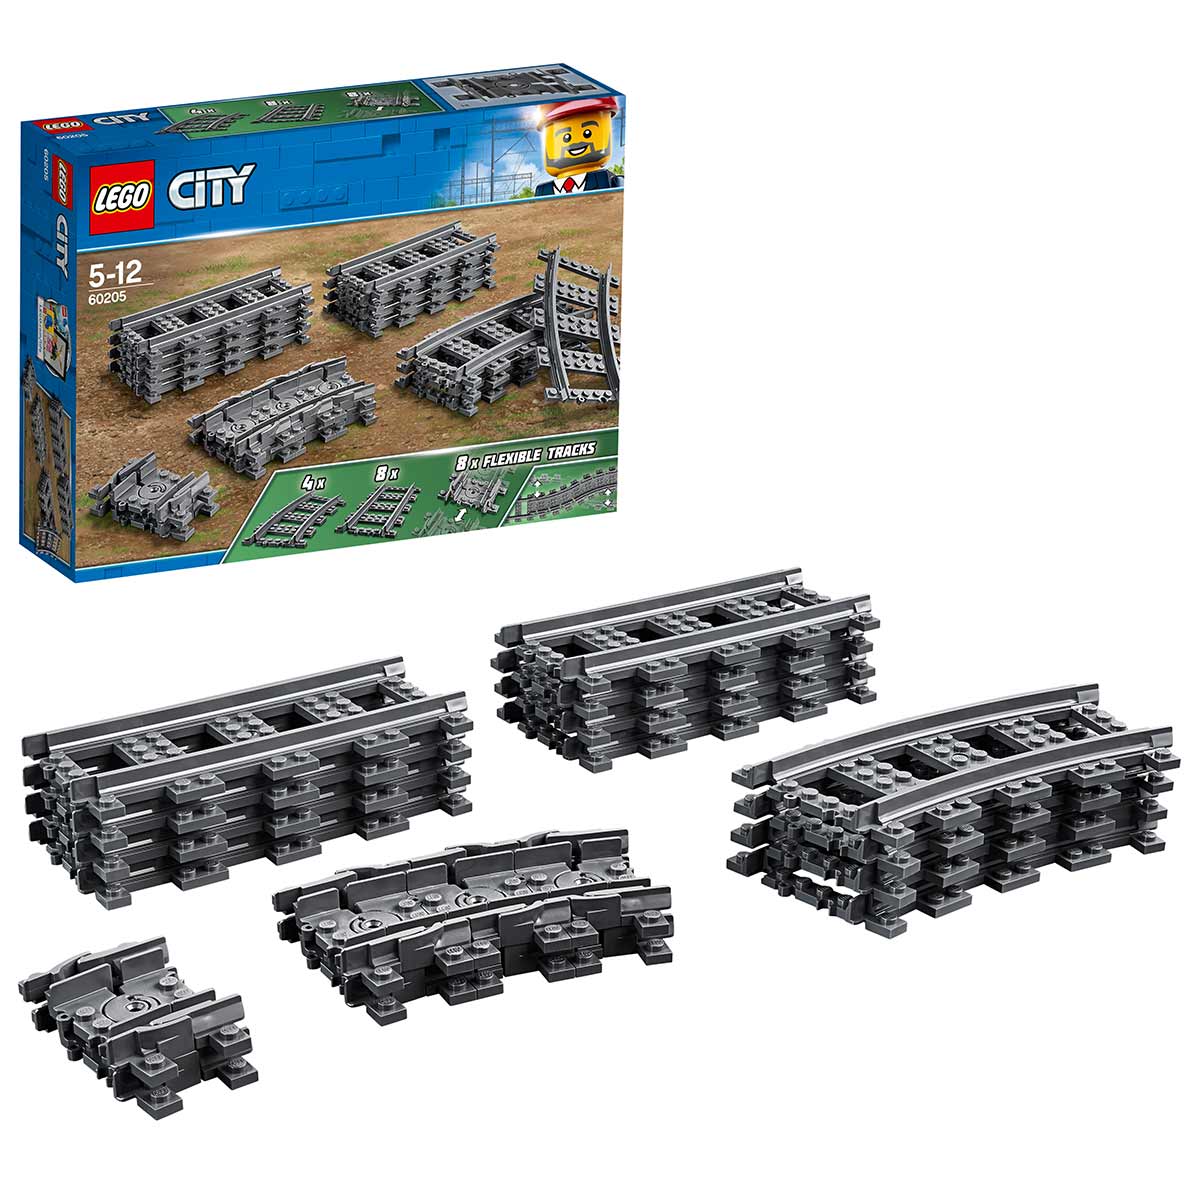 Köp LEGO City Trains 60205 Spår på